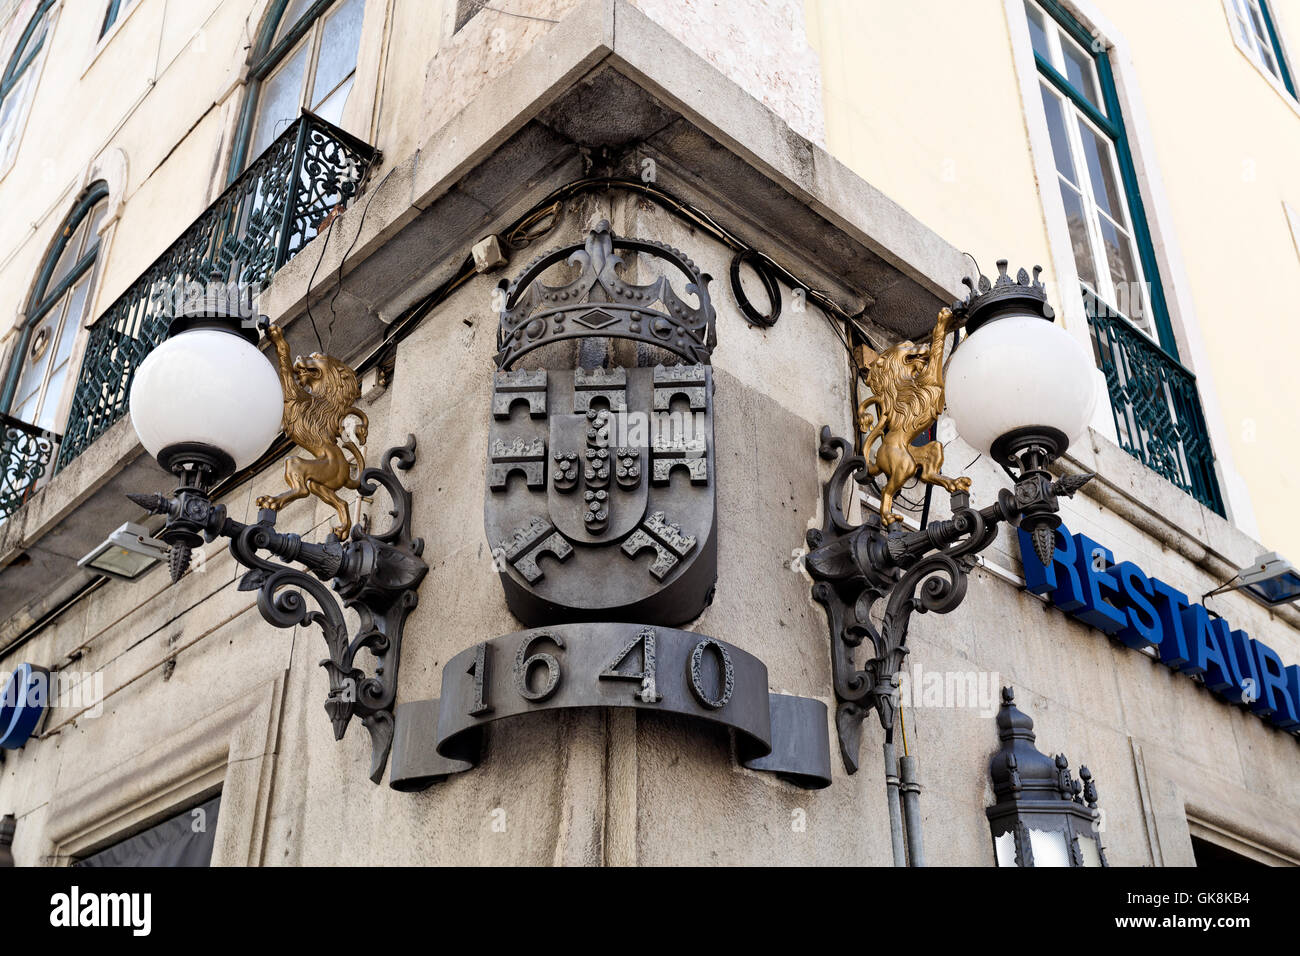 Splendide decorazioni all'angolo di alcuni vecchi edifici di Lisbona, Portogallo Foto Stock